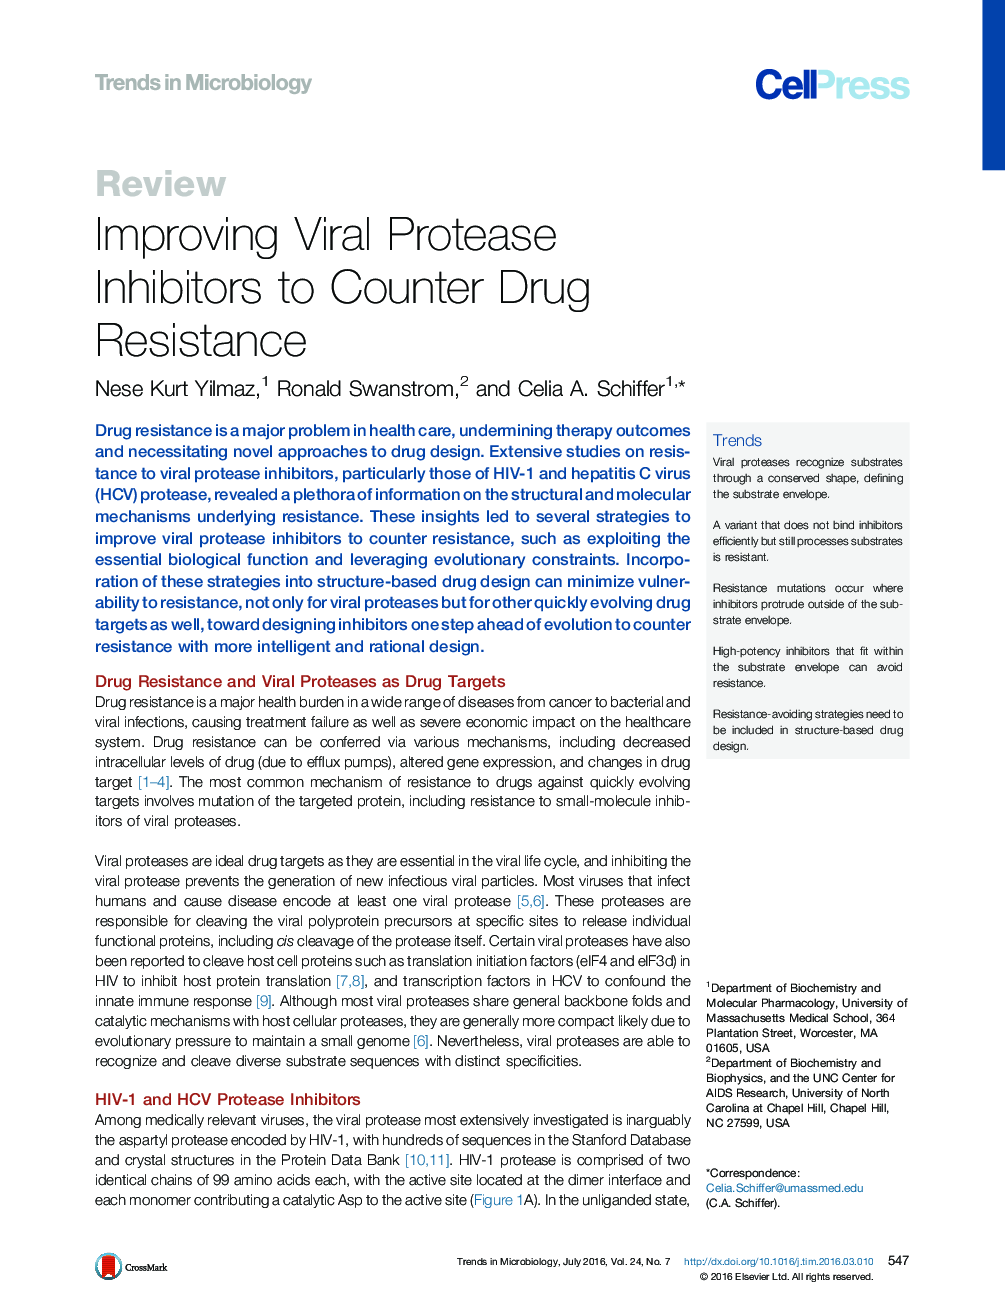 بهبود مهارکننده های پروتئینی ویروسی برای مبارزه با مقاومت به مواد مخدر 